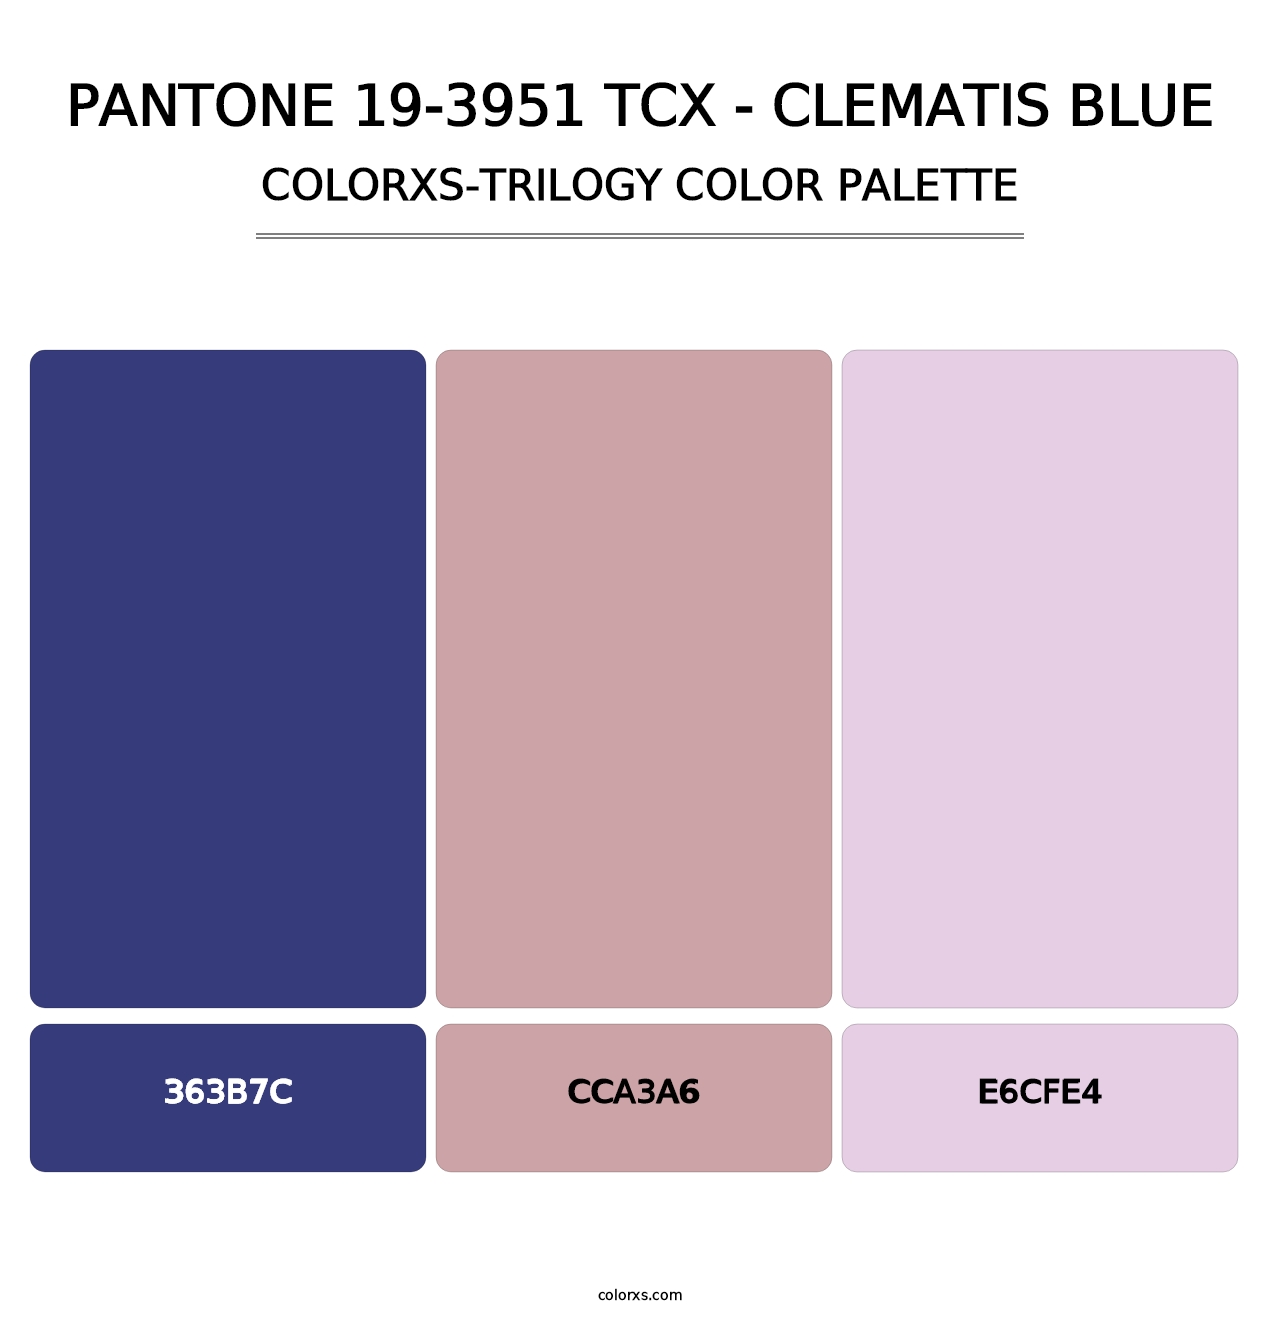 PANTONE 19-3951 TCX - Clematis Blue - Colorxs Trilogy Palette